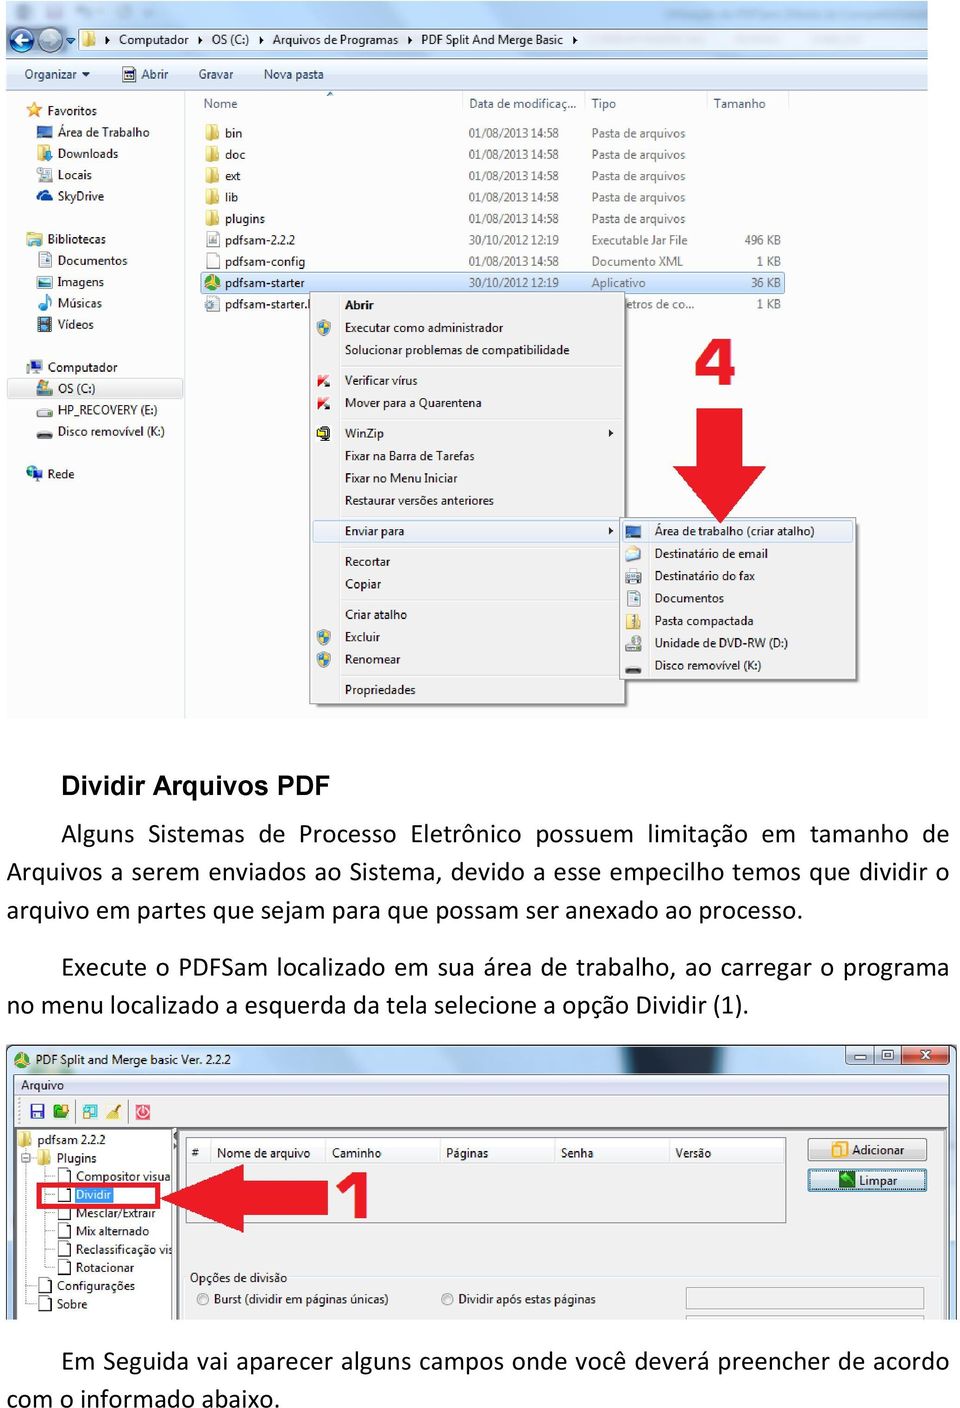 Execute o PDFSam localizado em sua área de trabalho, ao carregar o programa no menu localizado a esquerda da tela